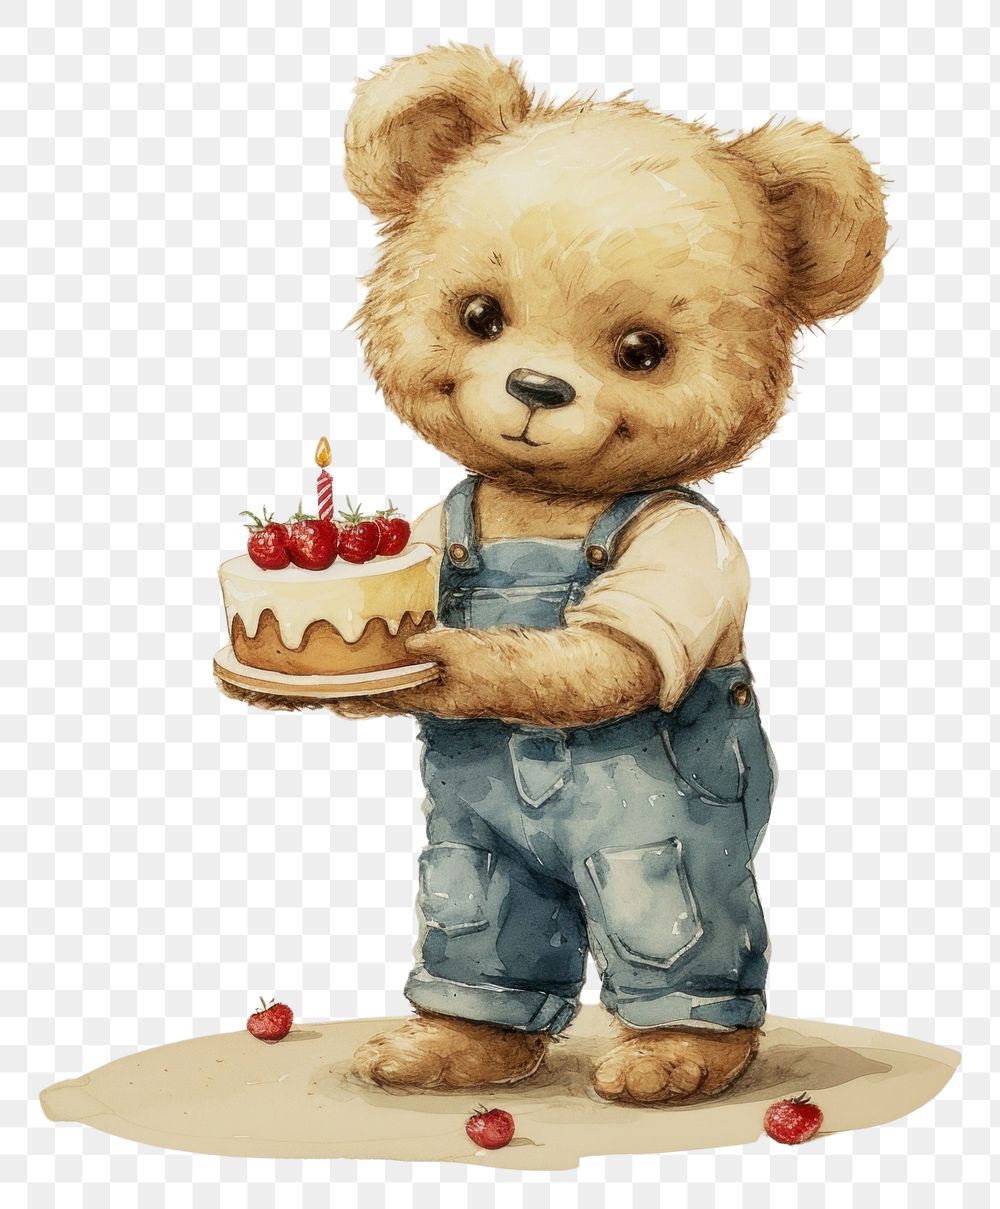 PNG Vintage illustration of teddy bear cake dessert food.